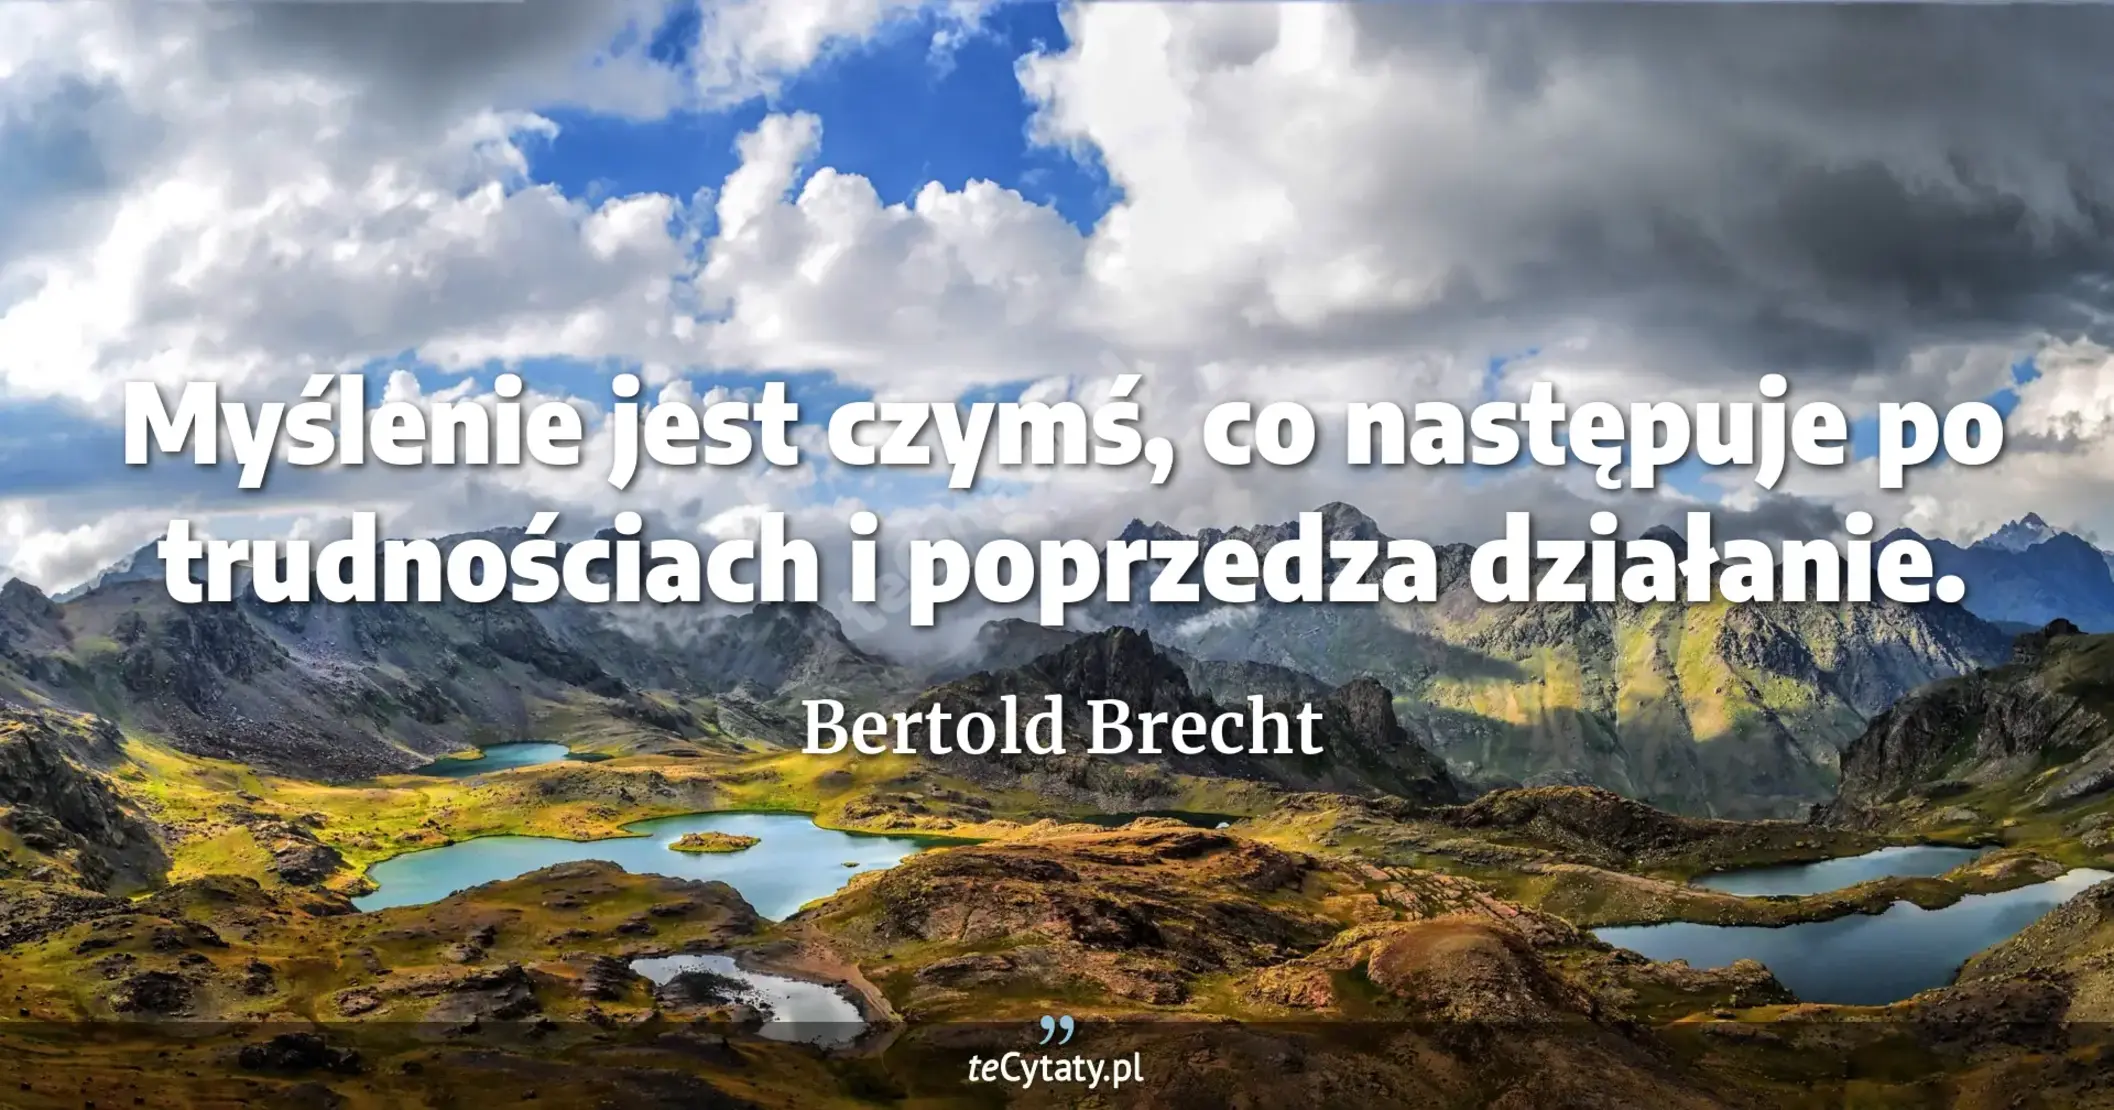 Myślenie jest czymś, co następuje po trudnościach i poprzedza działanie. - Bertold Brecht